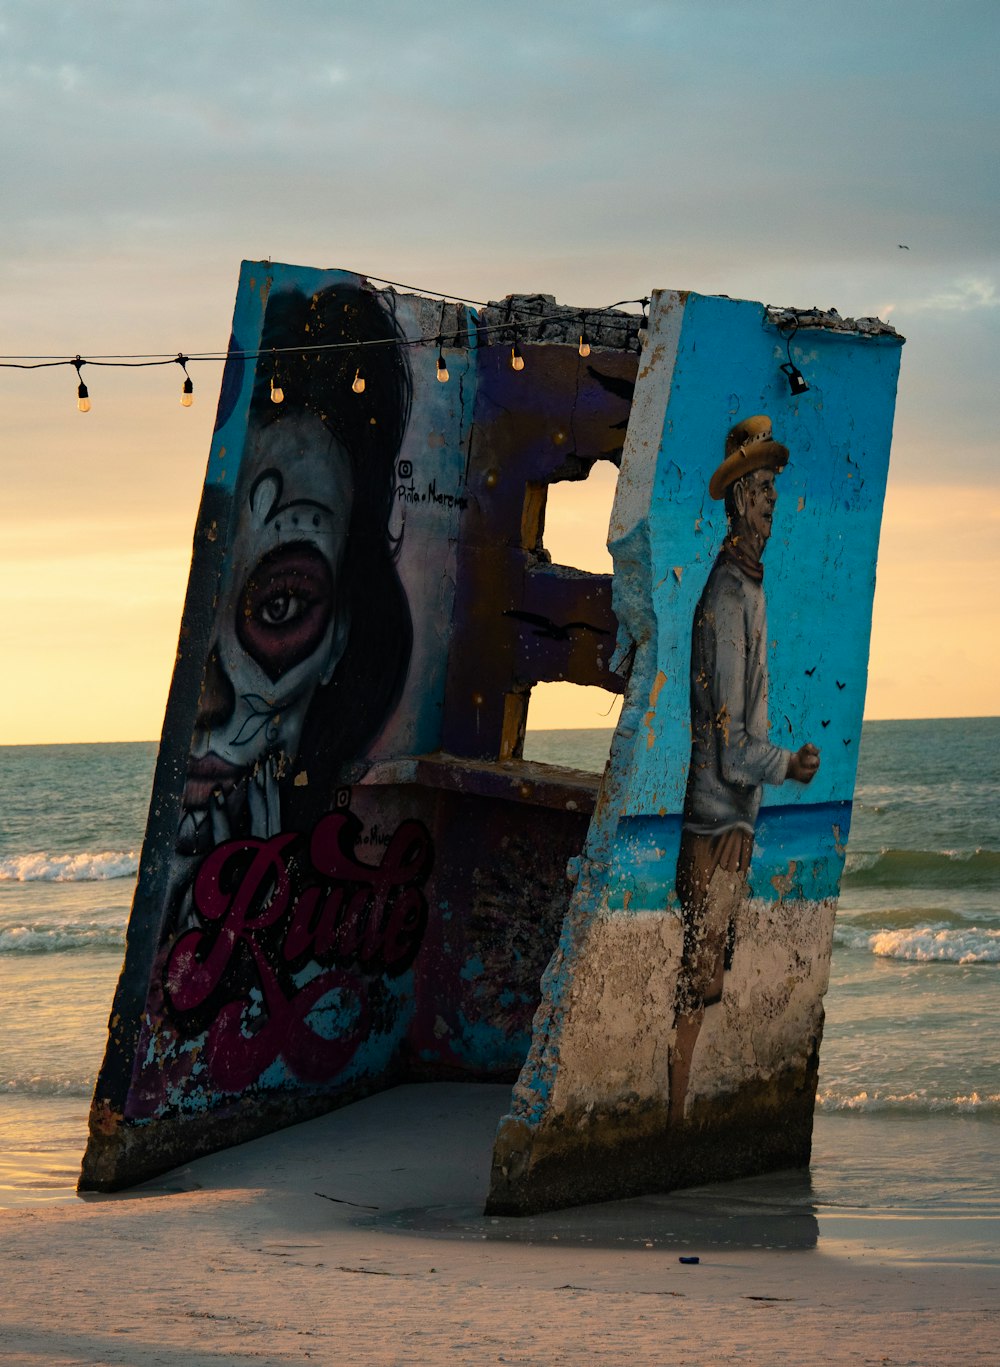 Un hombre parado junto a una gran obra de arte en la playa